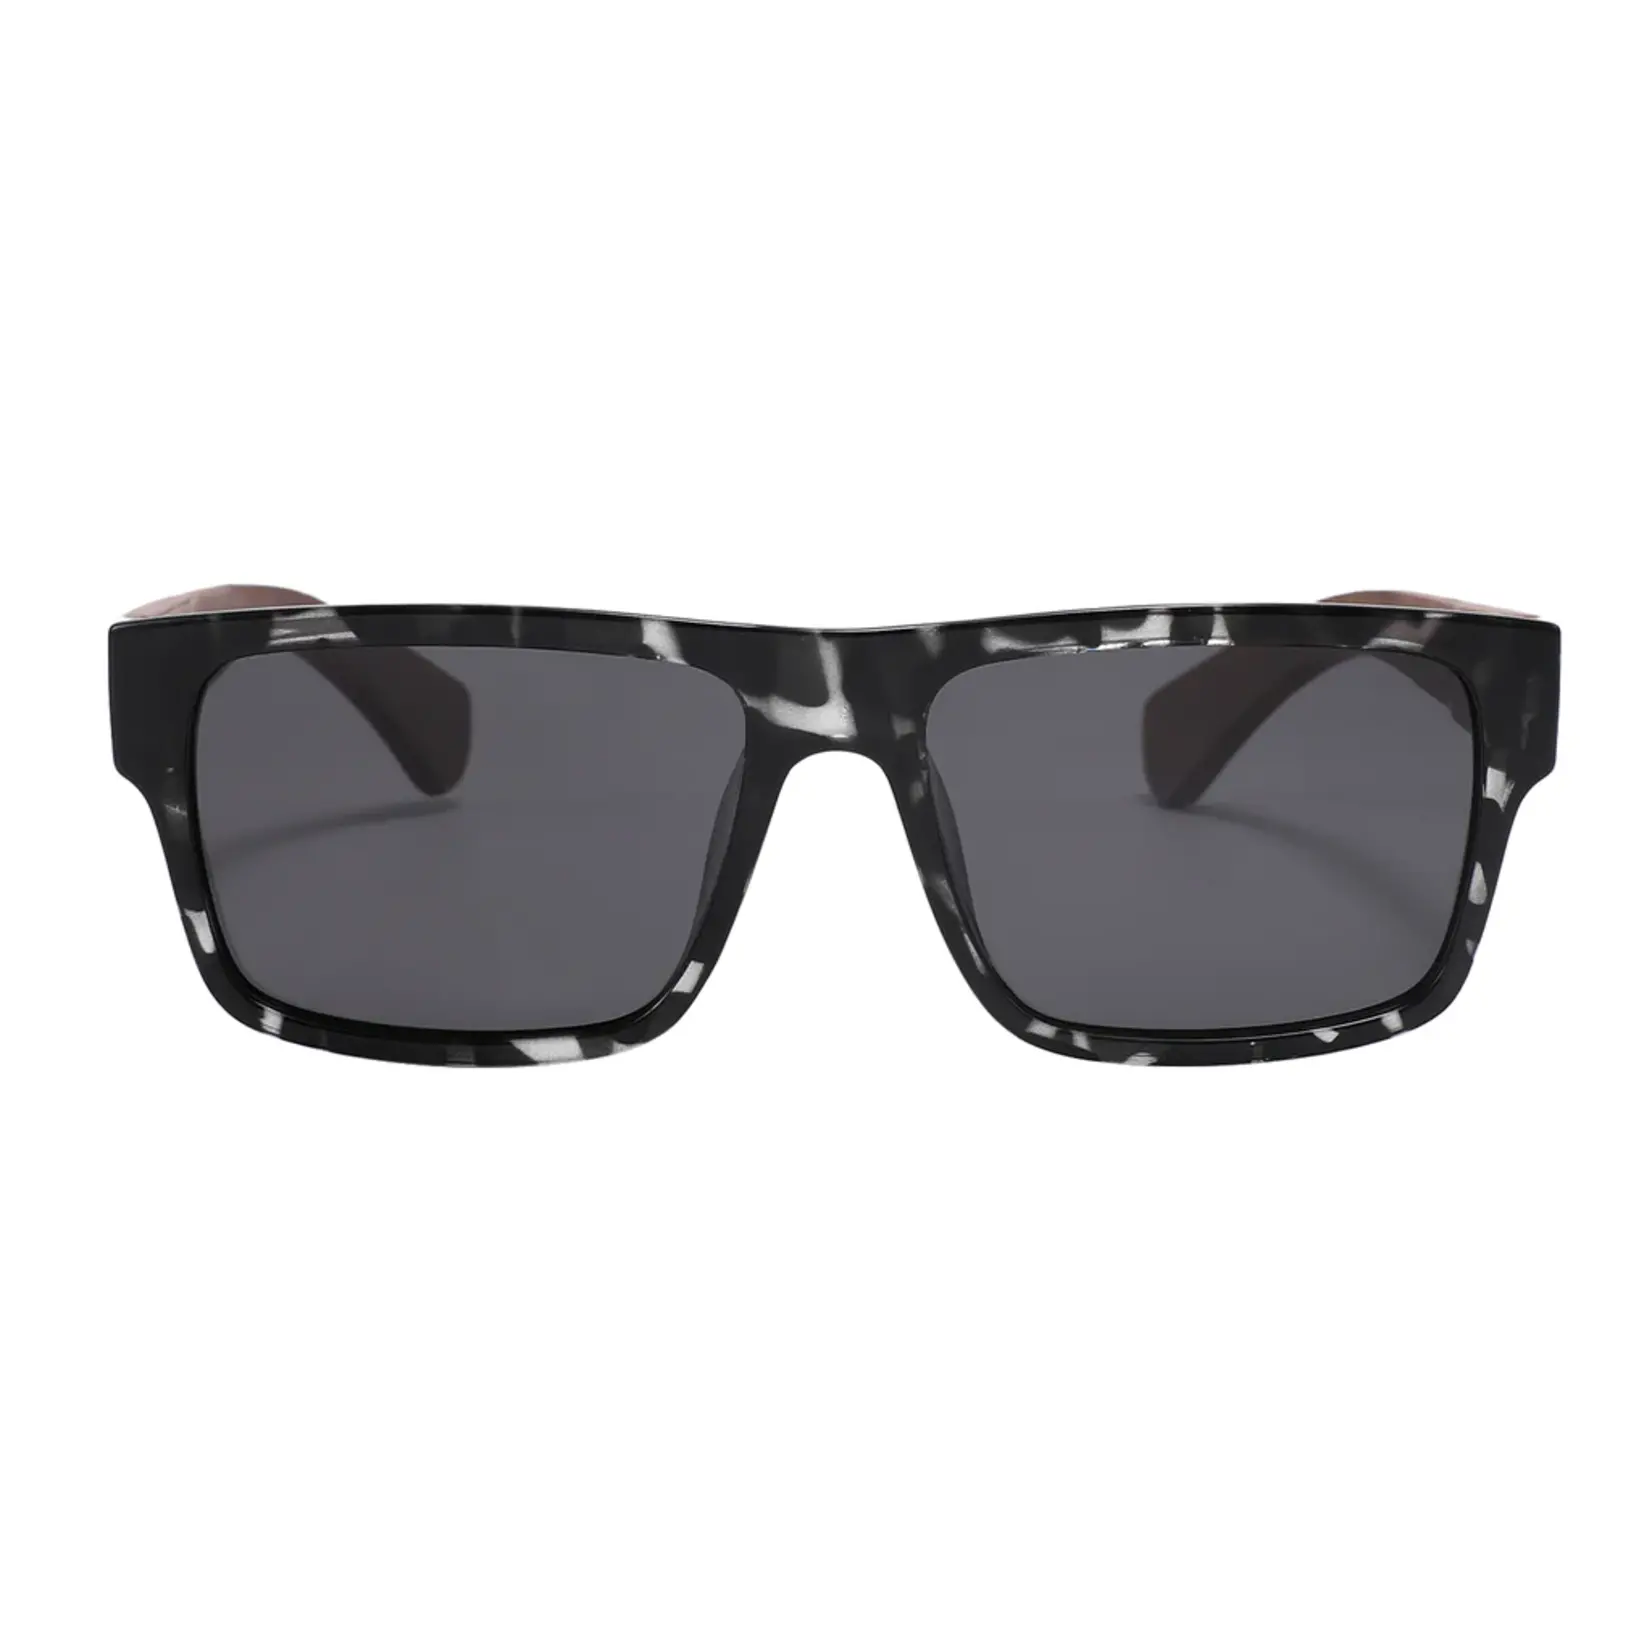 Kuma Sunglasses Ceiba - Black Marble